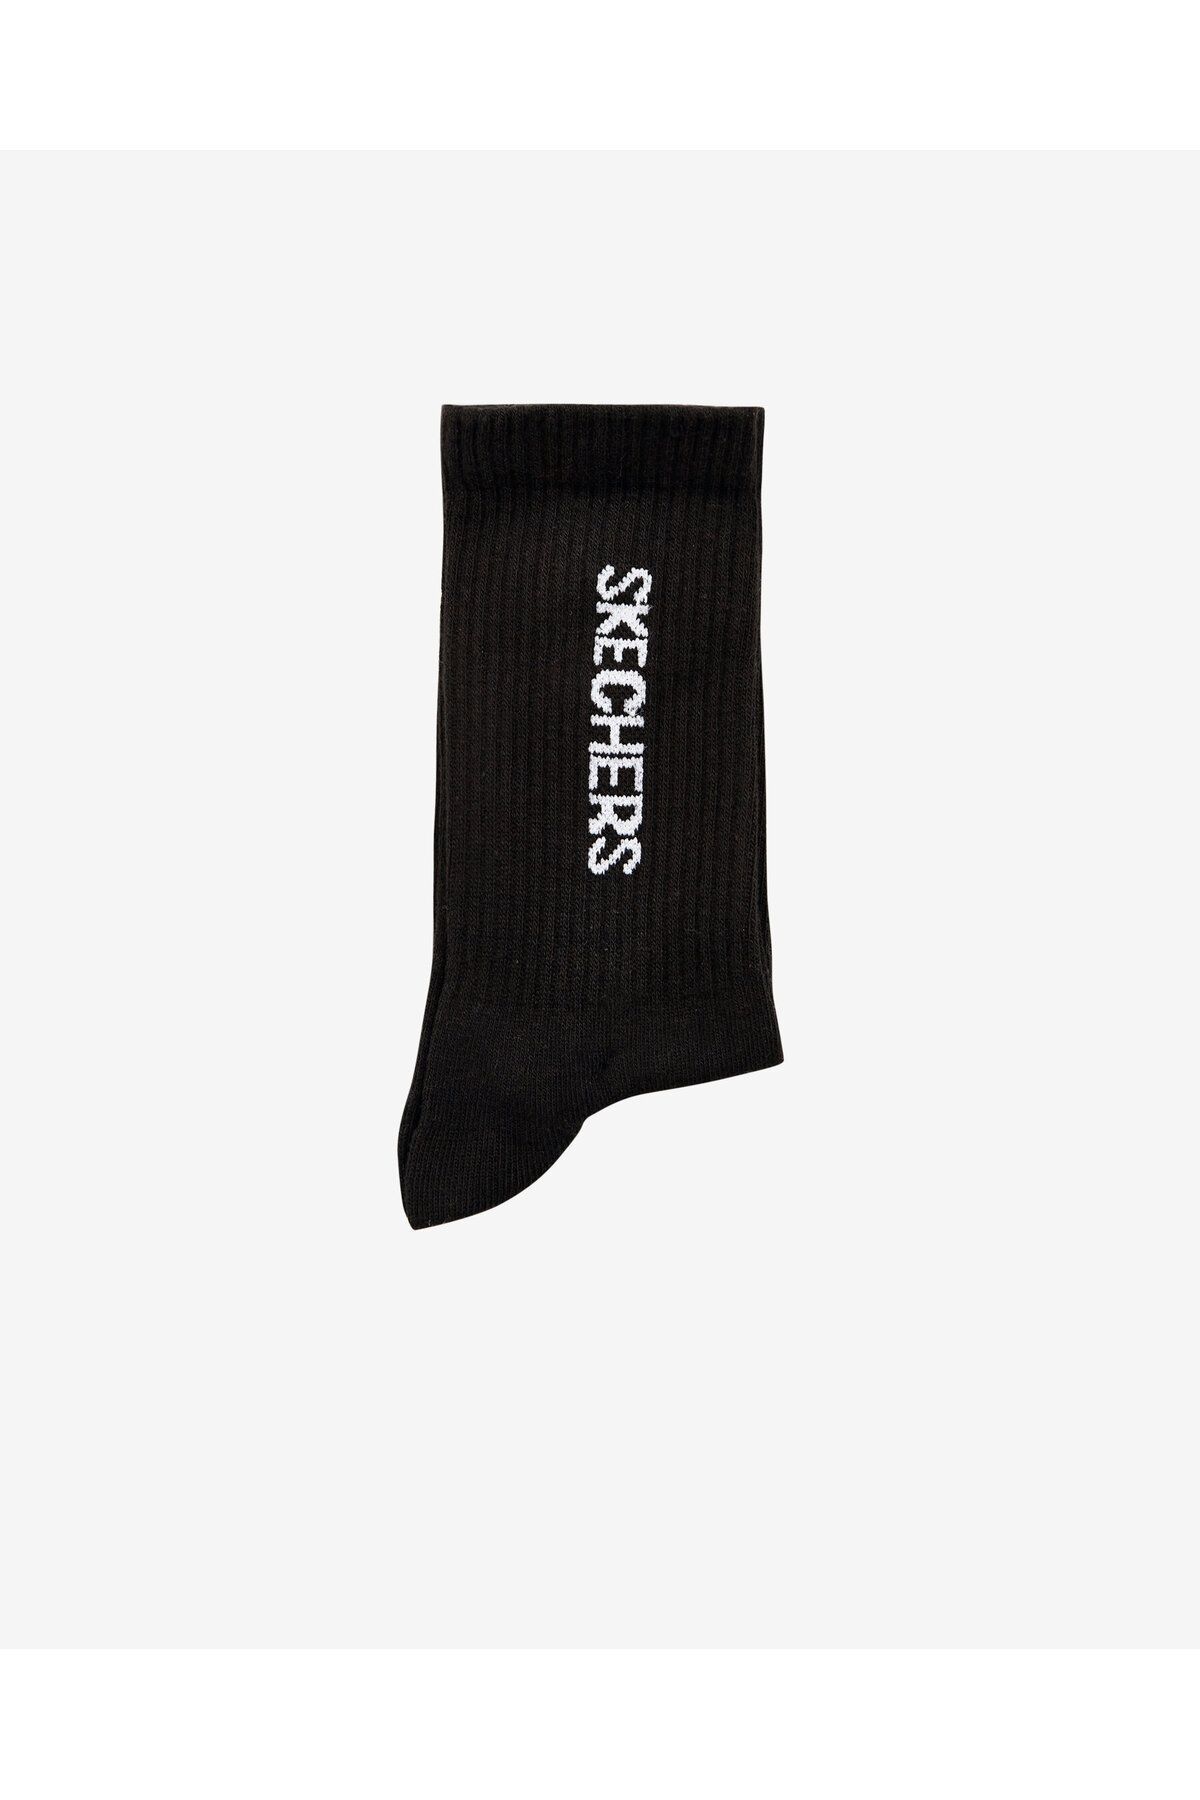 Skechers U Crew Cut Sock Unisex Siyah Çorap S221513-001